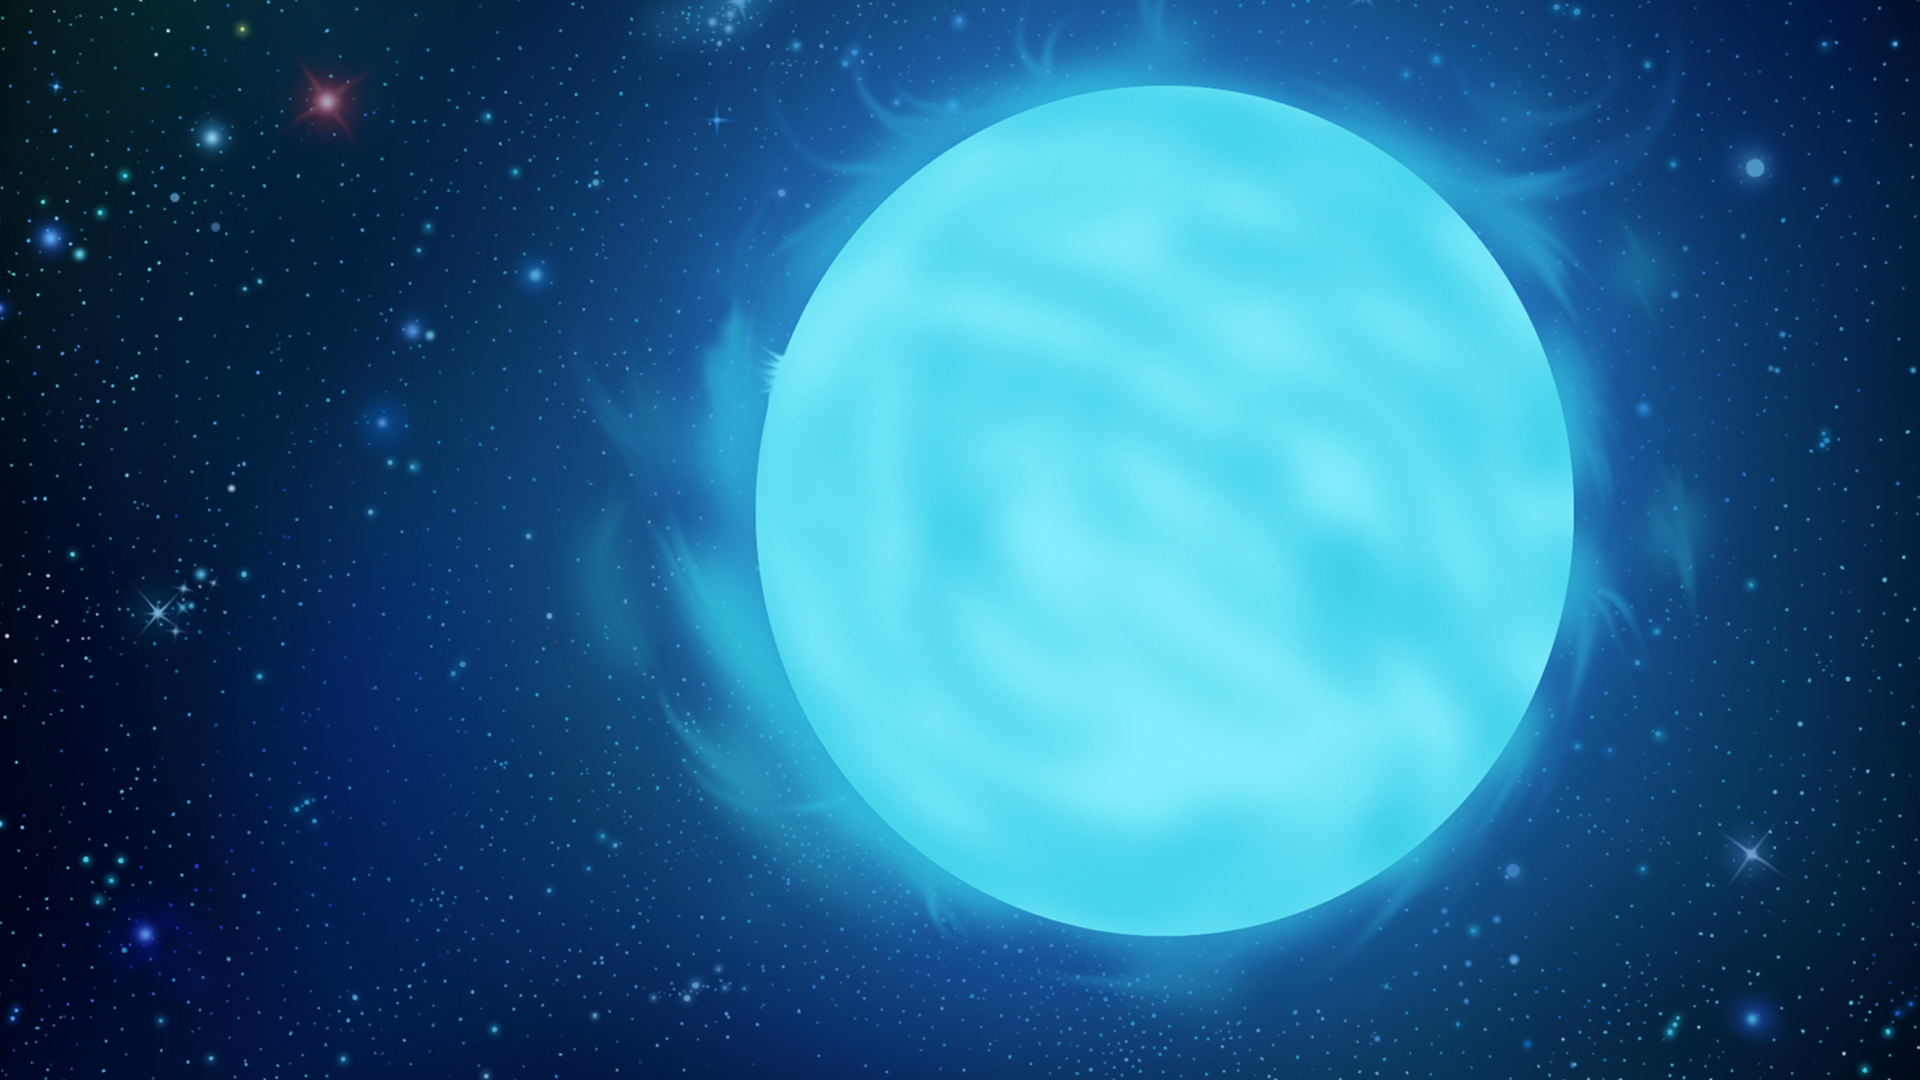 Голубой сверхгигант. R136. Звездное небо. Голубой гипергигант звезда r136a1.